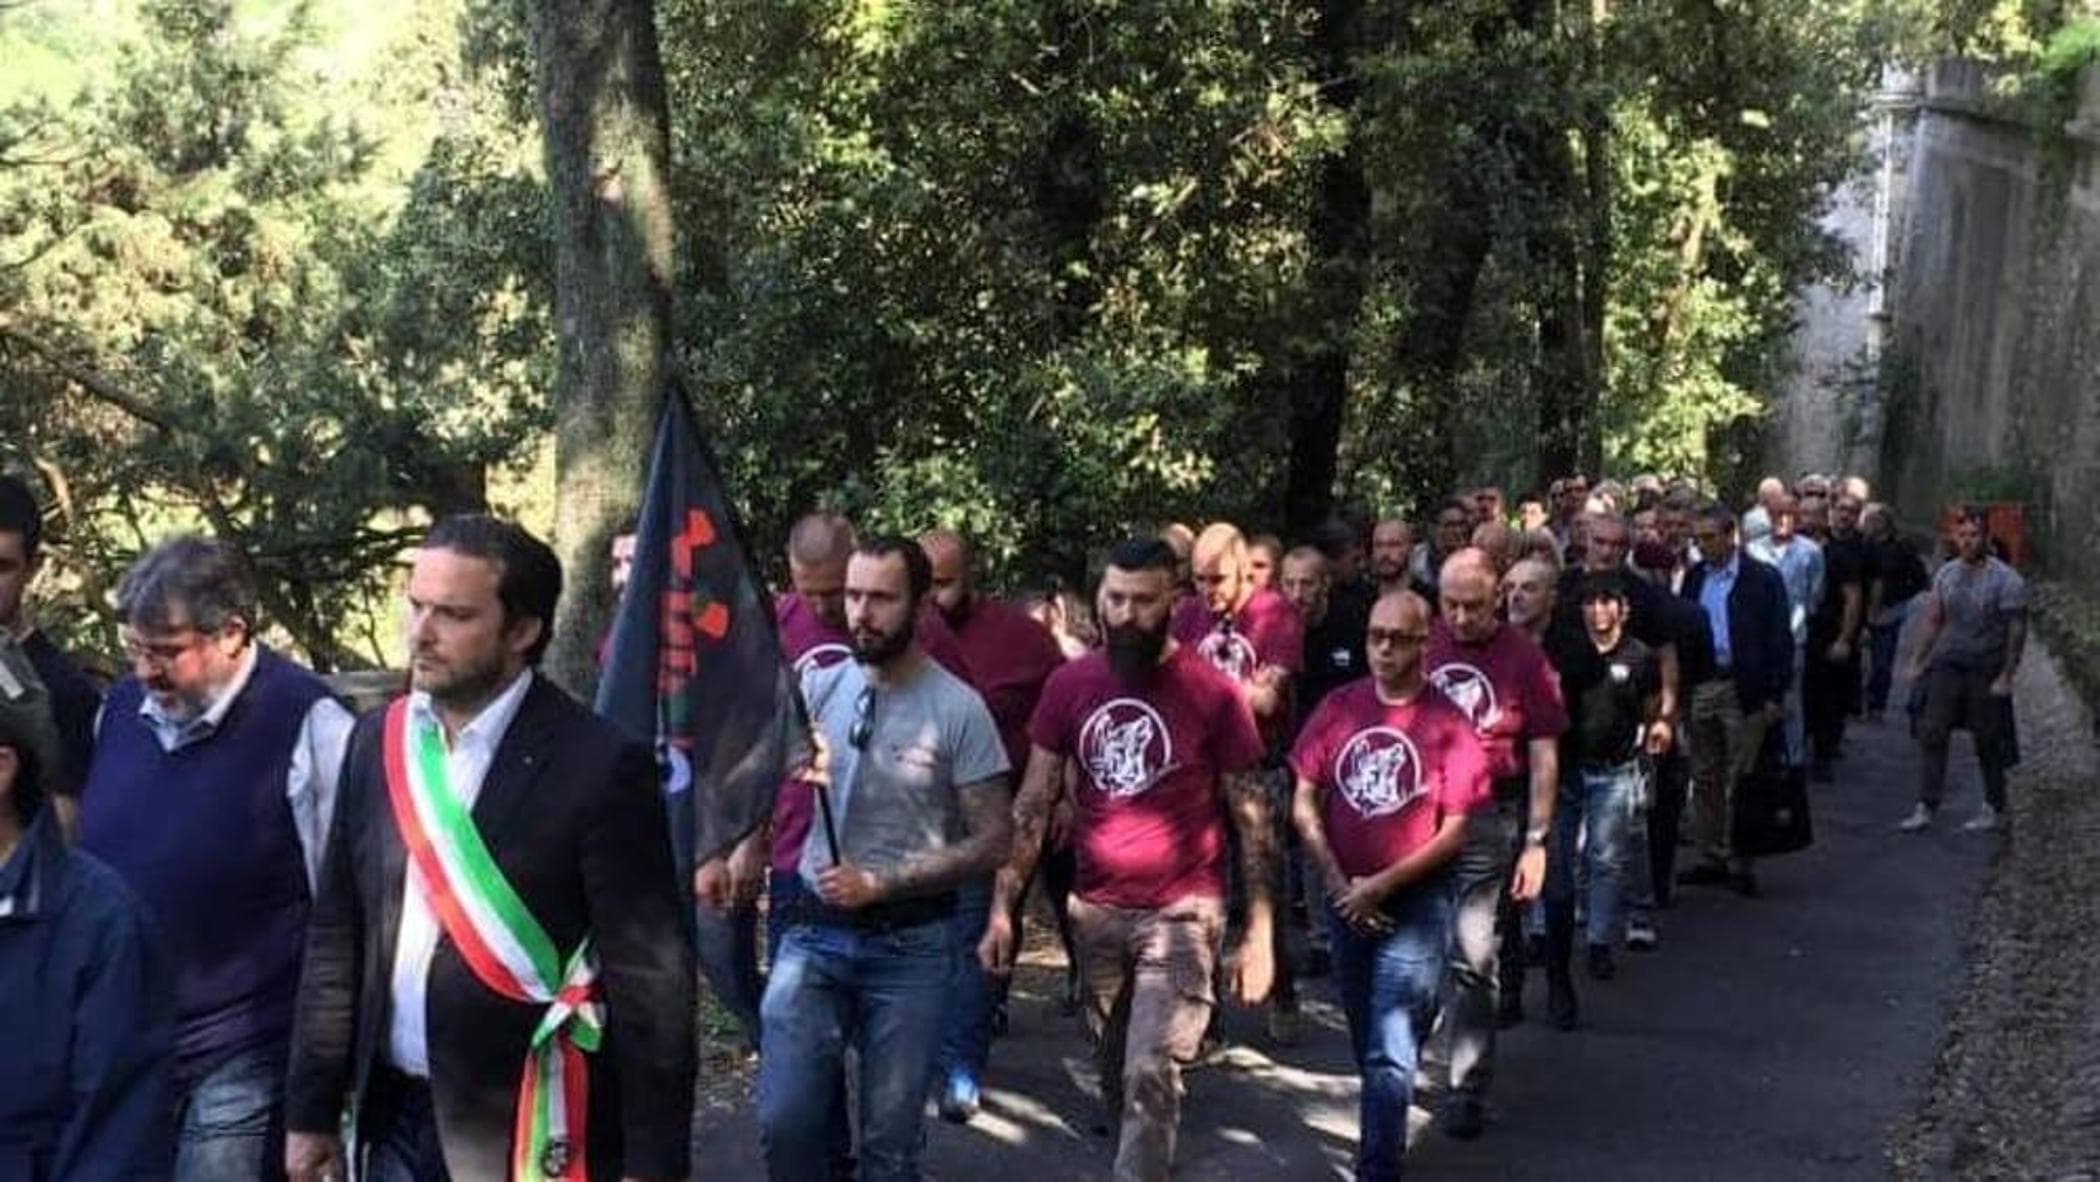 Genova stanzia quasi 2 milioni per il sacrario fascista: polemiche (e la mezza marcia indietro)